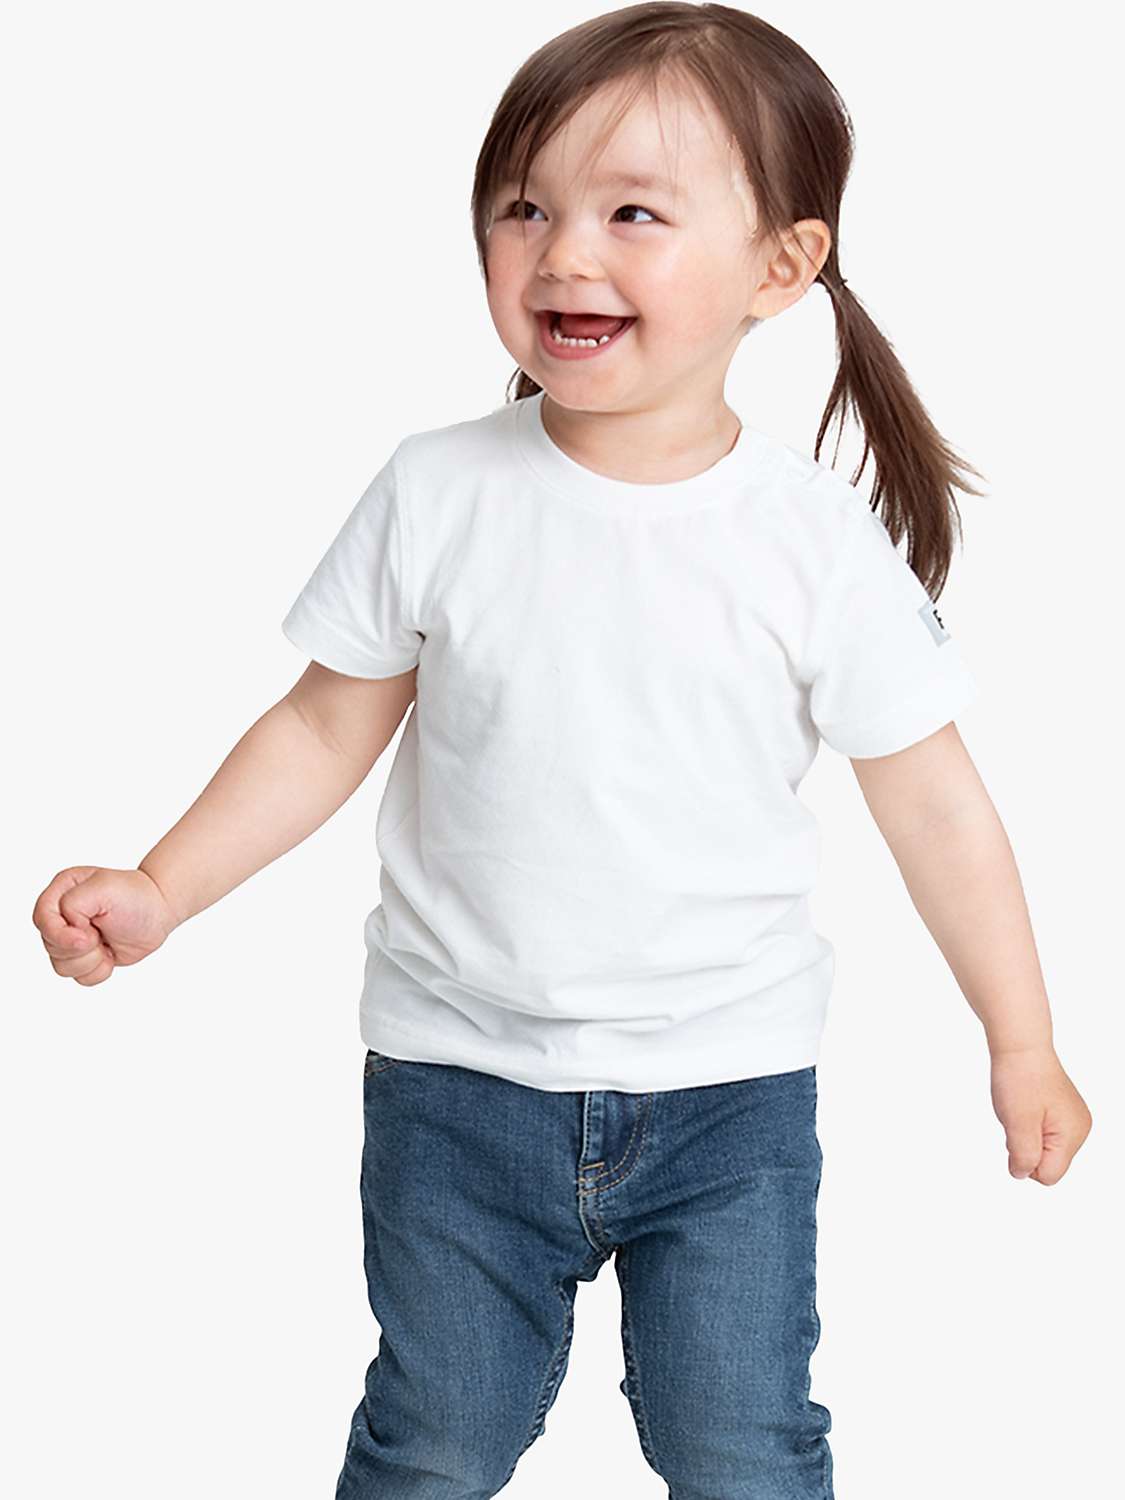 Buy Polarn O. Pyret Kids' Organic Cotton T-Shirt, White Online at johnlewis.com